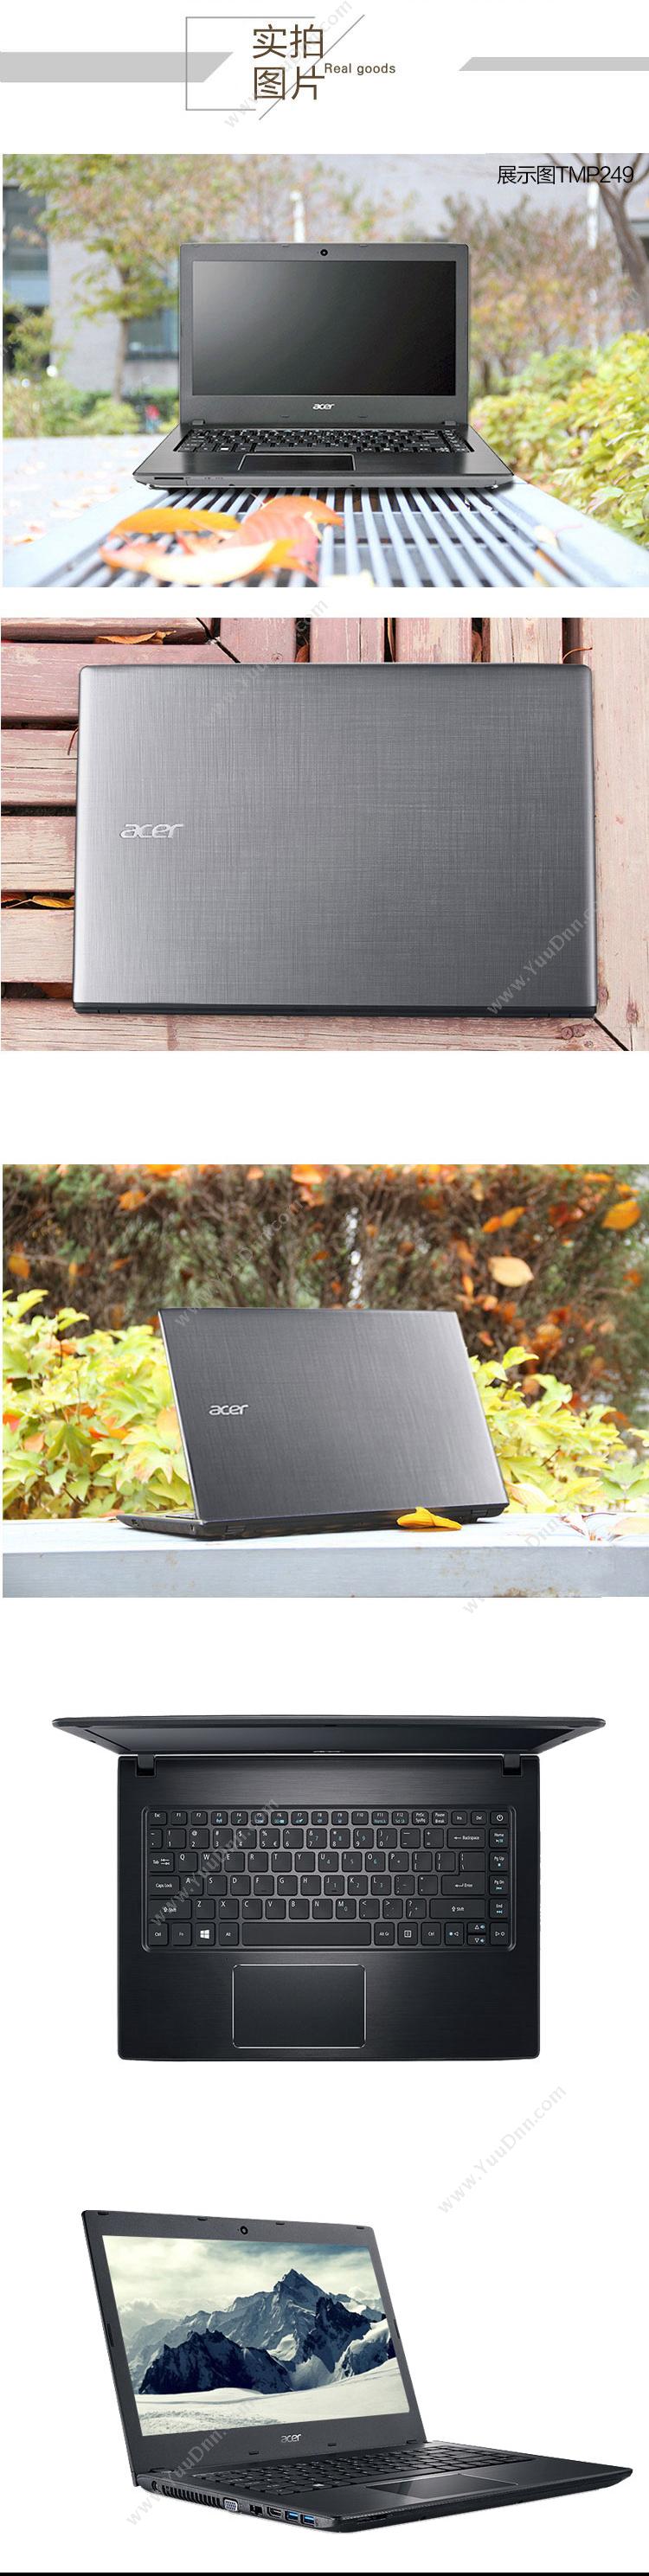 宏碁 Acer TravelMate P249-7498 便携式计算机 I3-6100U   /集成/4G/500G/集显/无光驱/LED/14英寸/一年保修/WIN7P 平板电脑